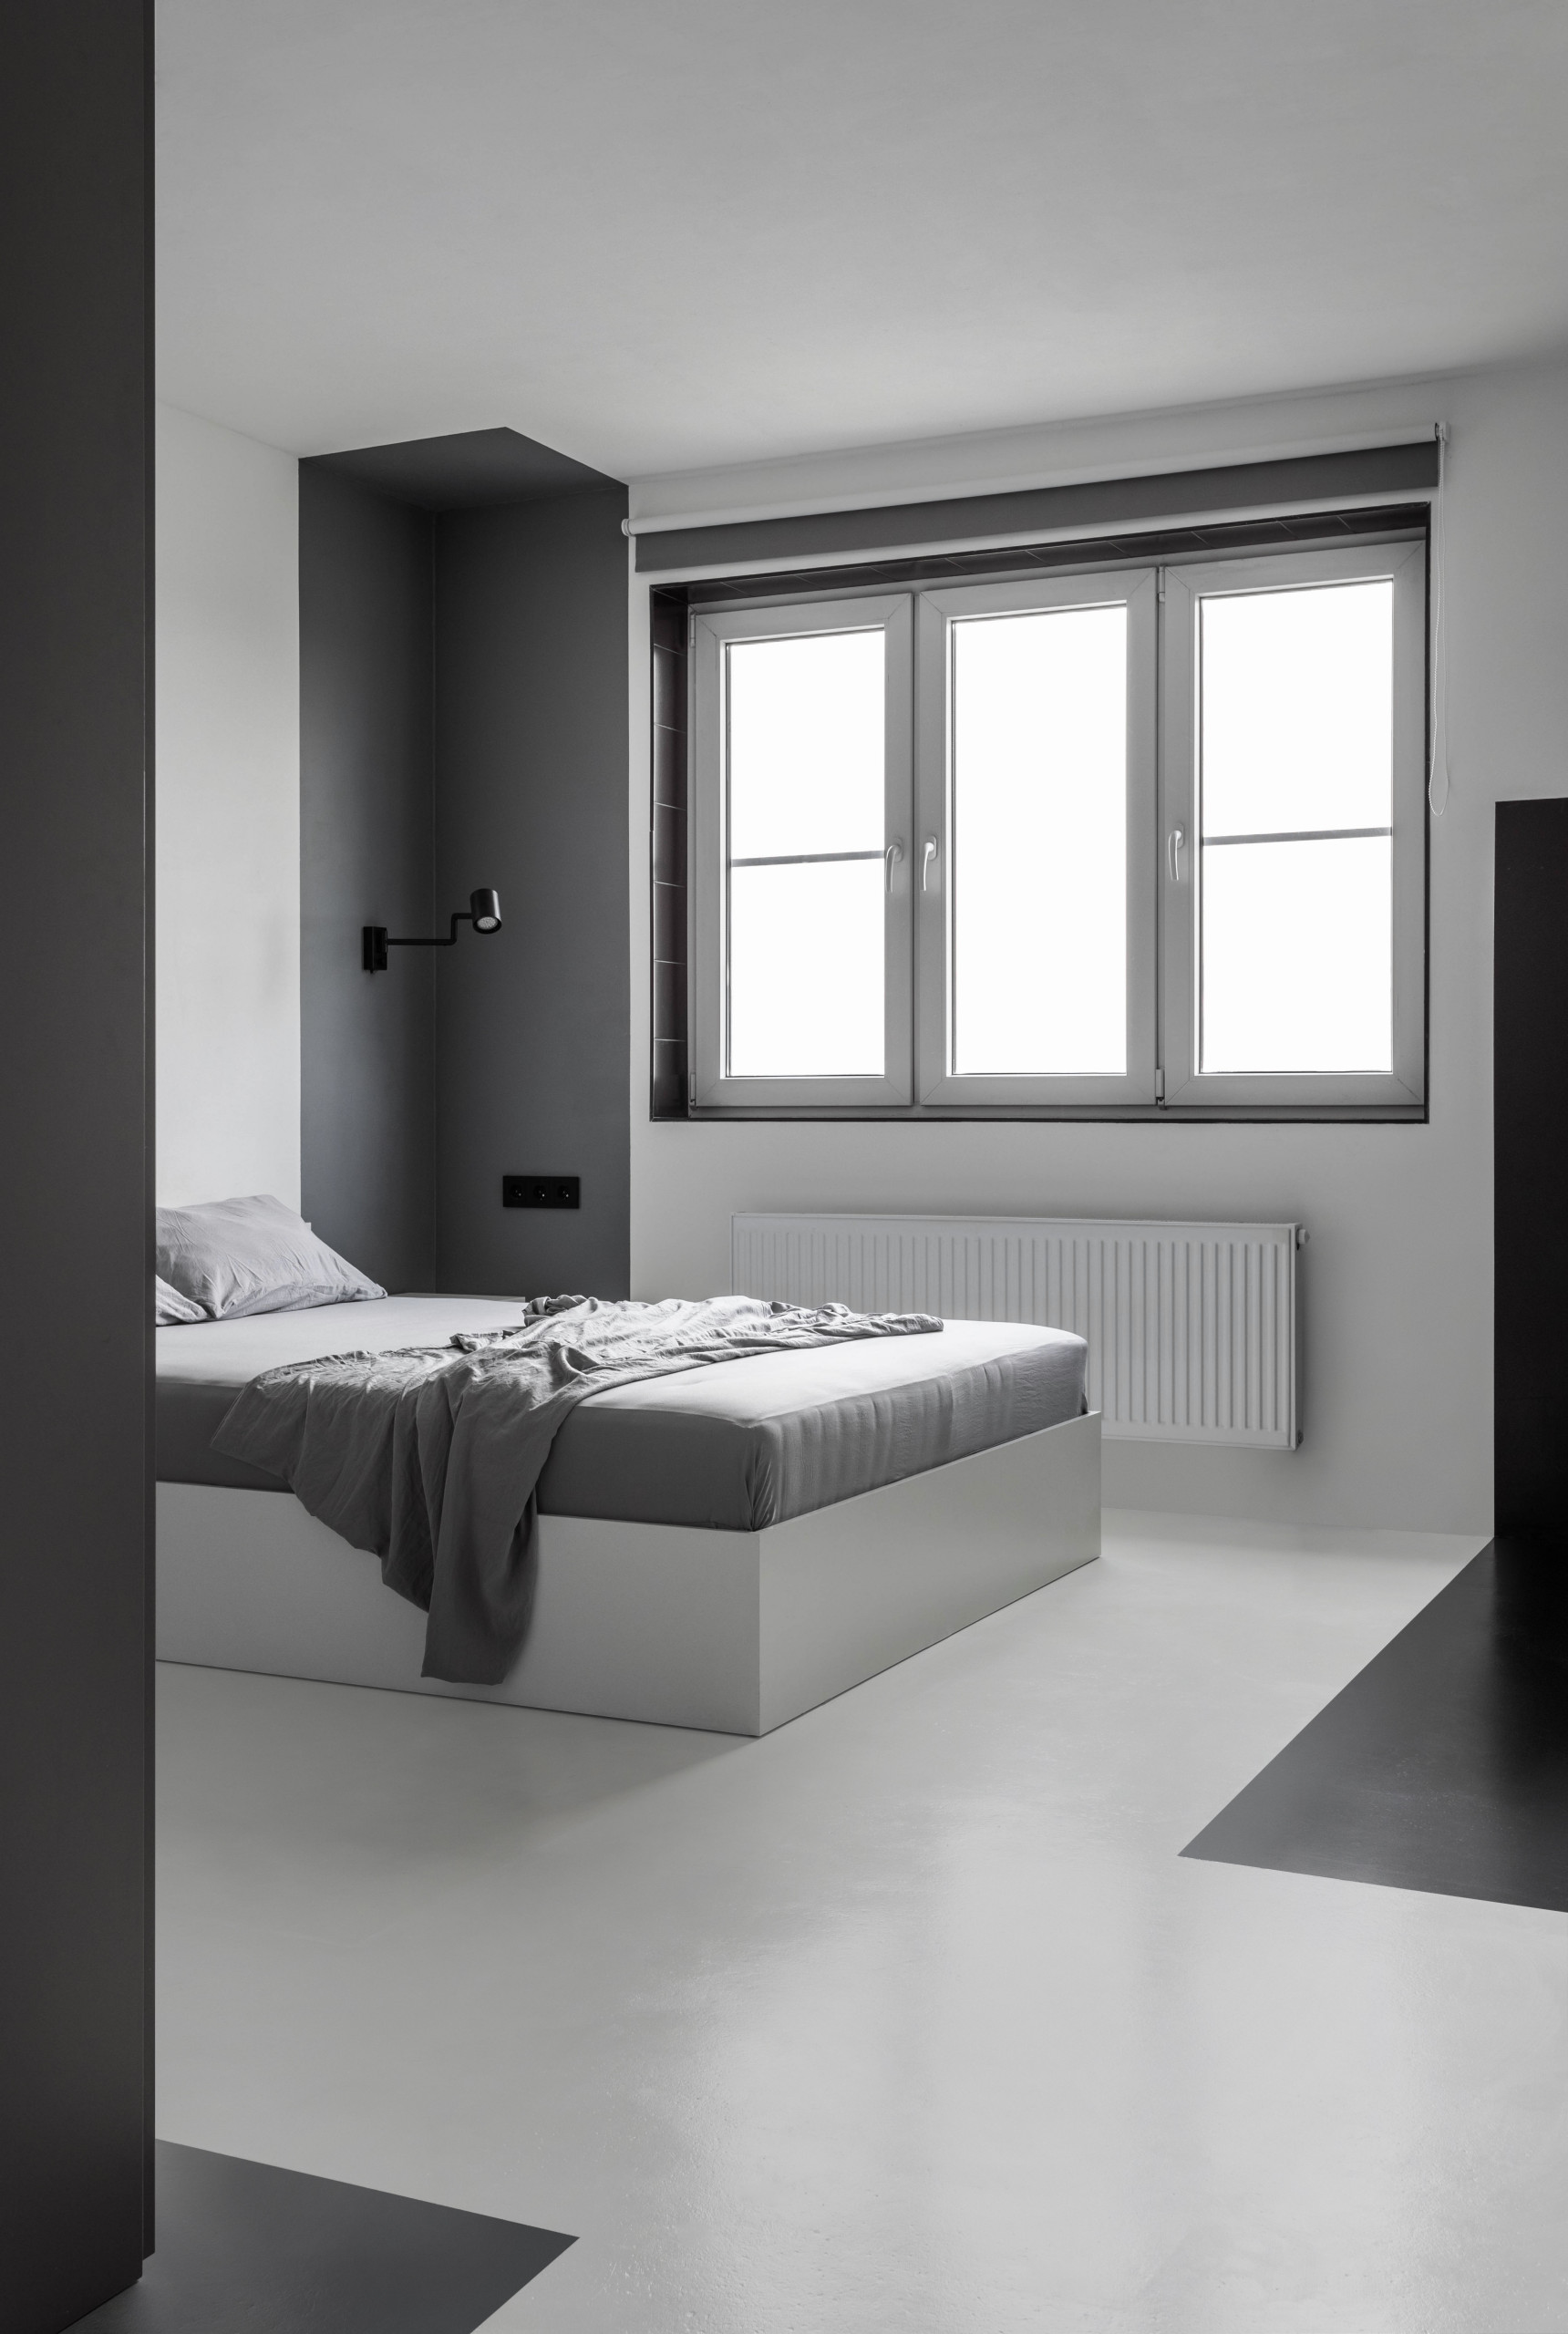 Дизайн спальни в панельном доме (71 фото)